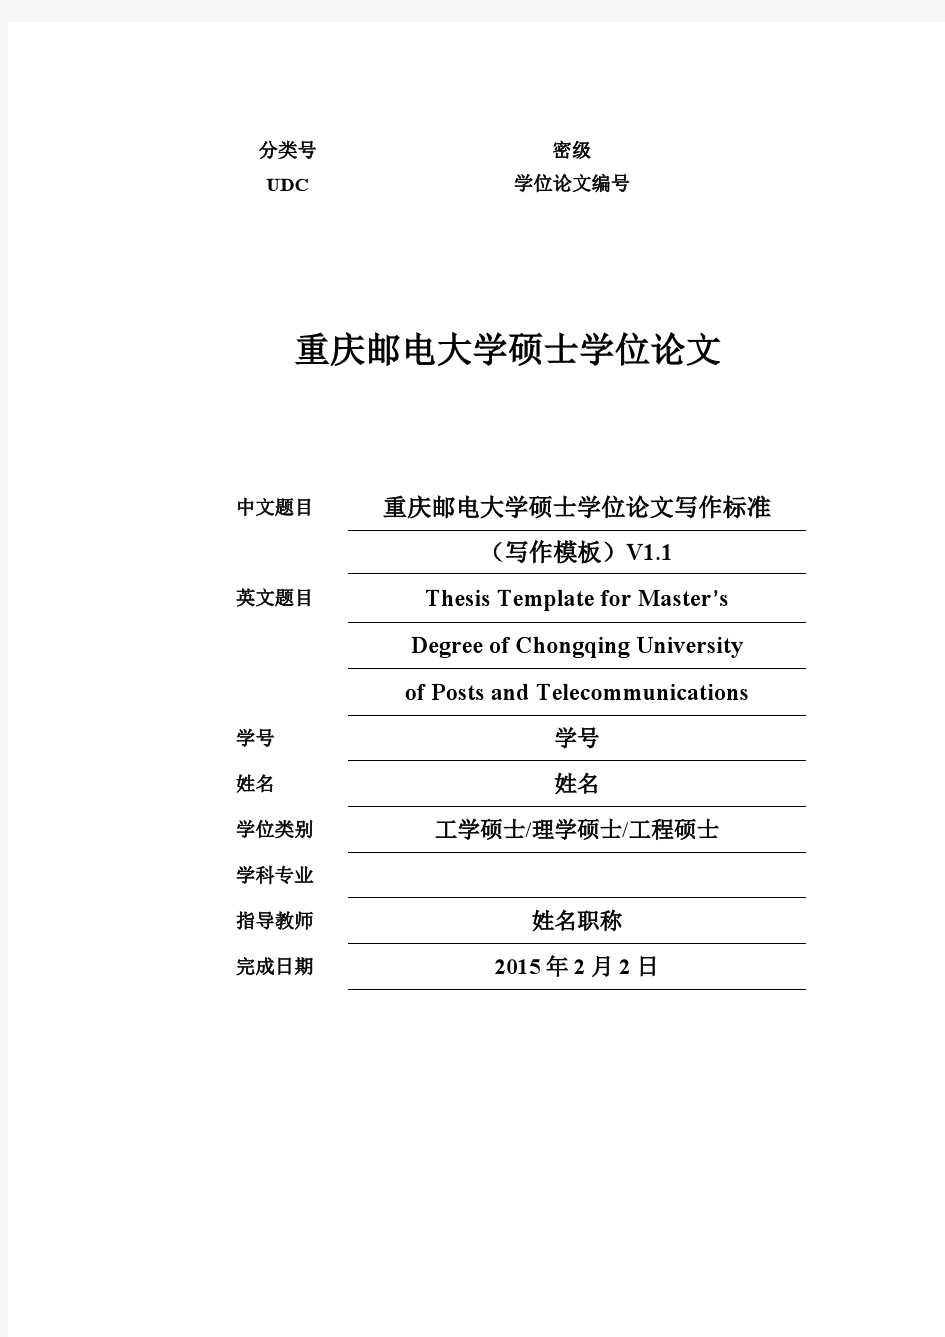 重庆邮电大学硕士研究生学位论文写作标准2015V1.1